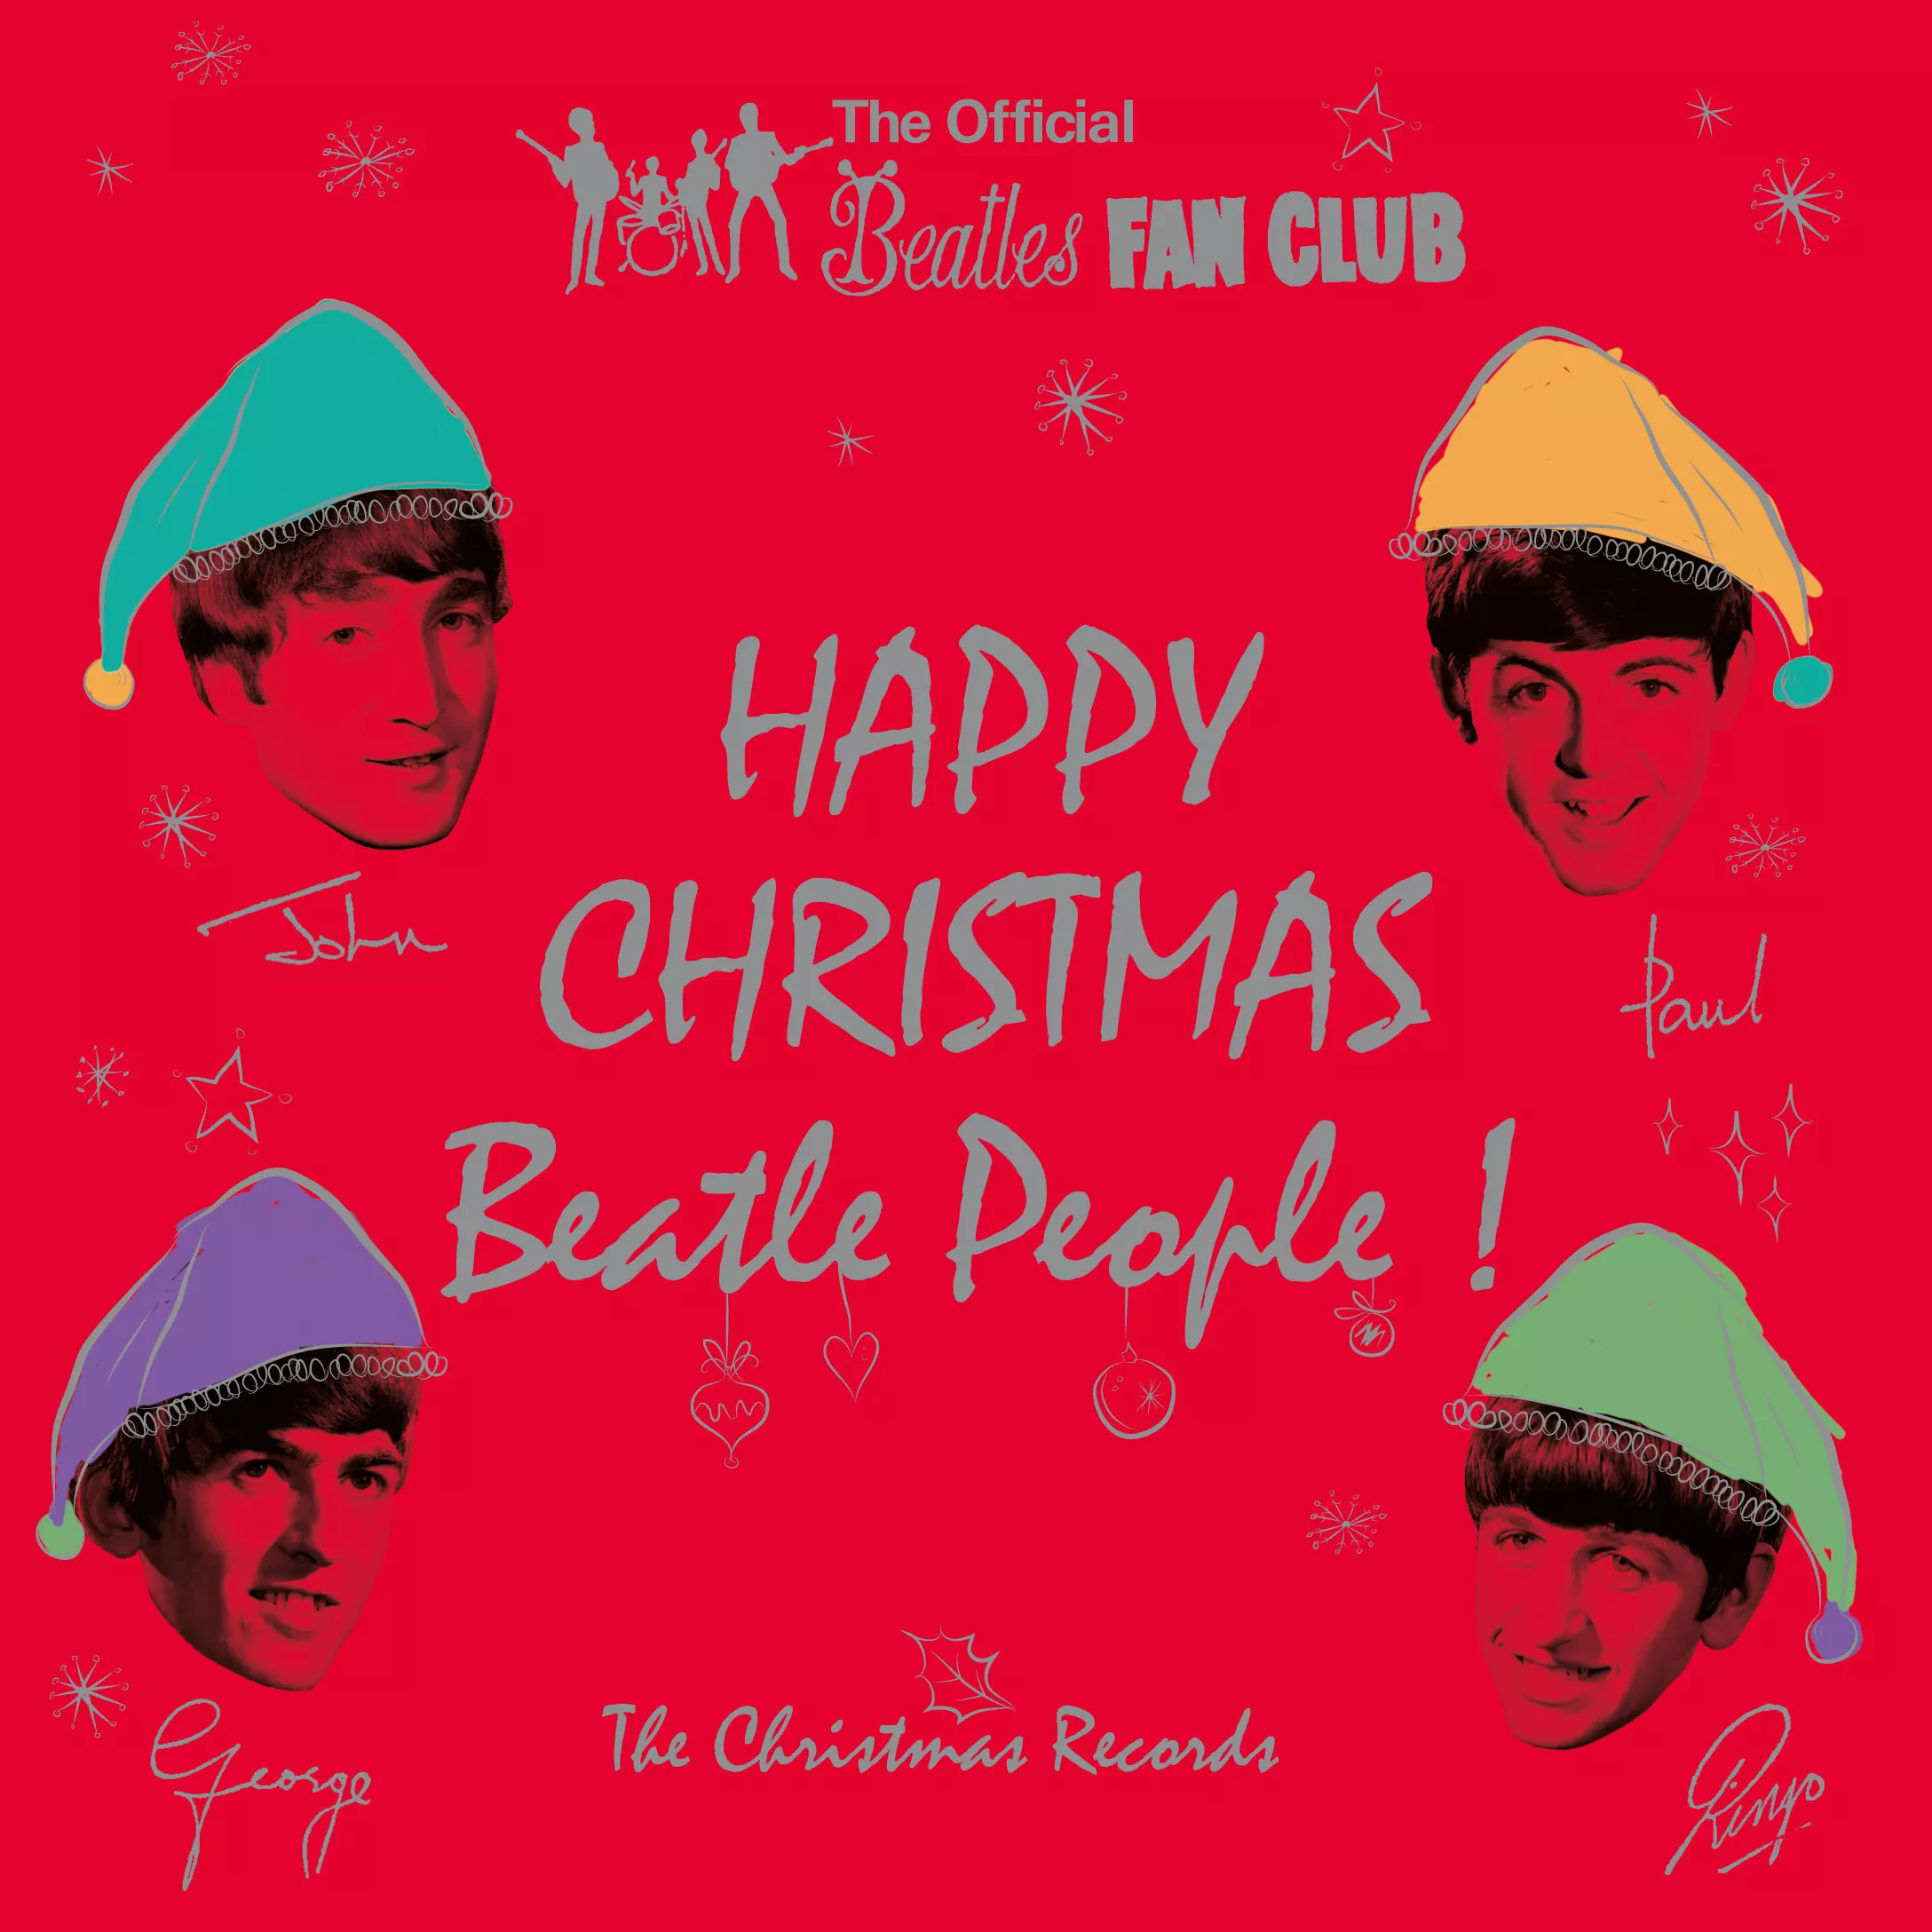 Beatles-jul: En fanudgivelse – for de store af slagsen